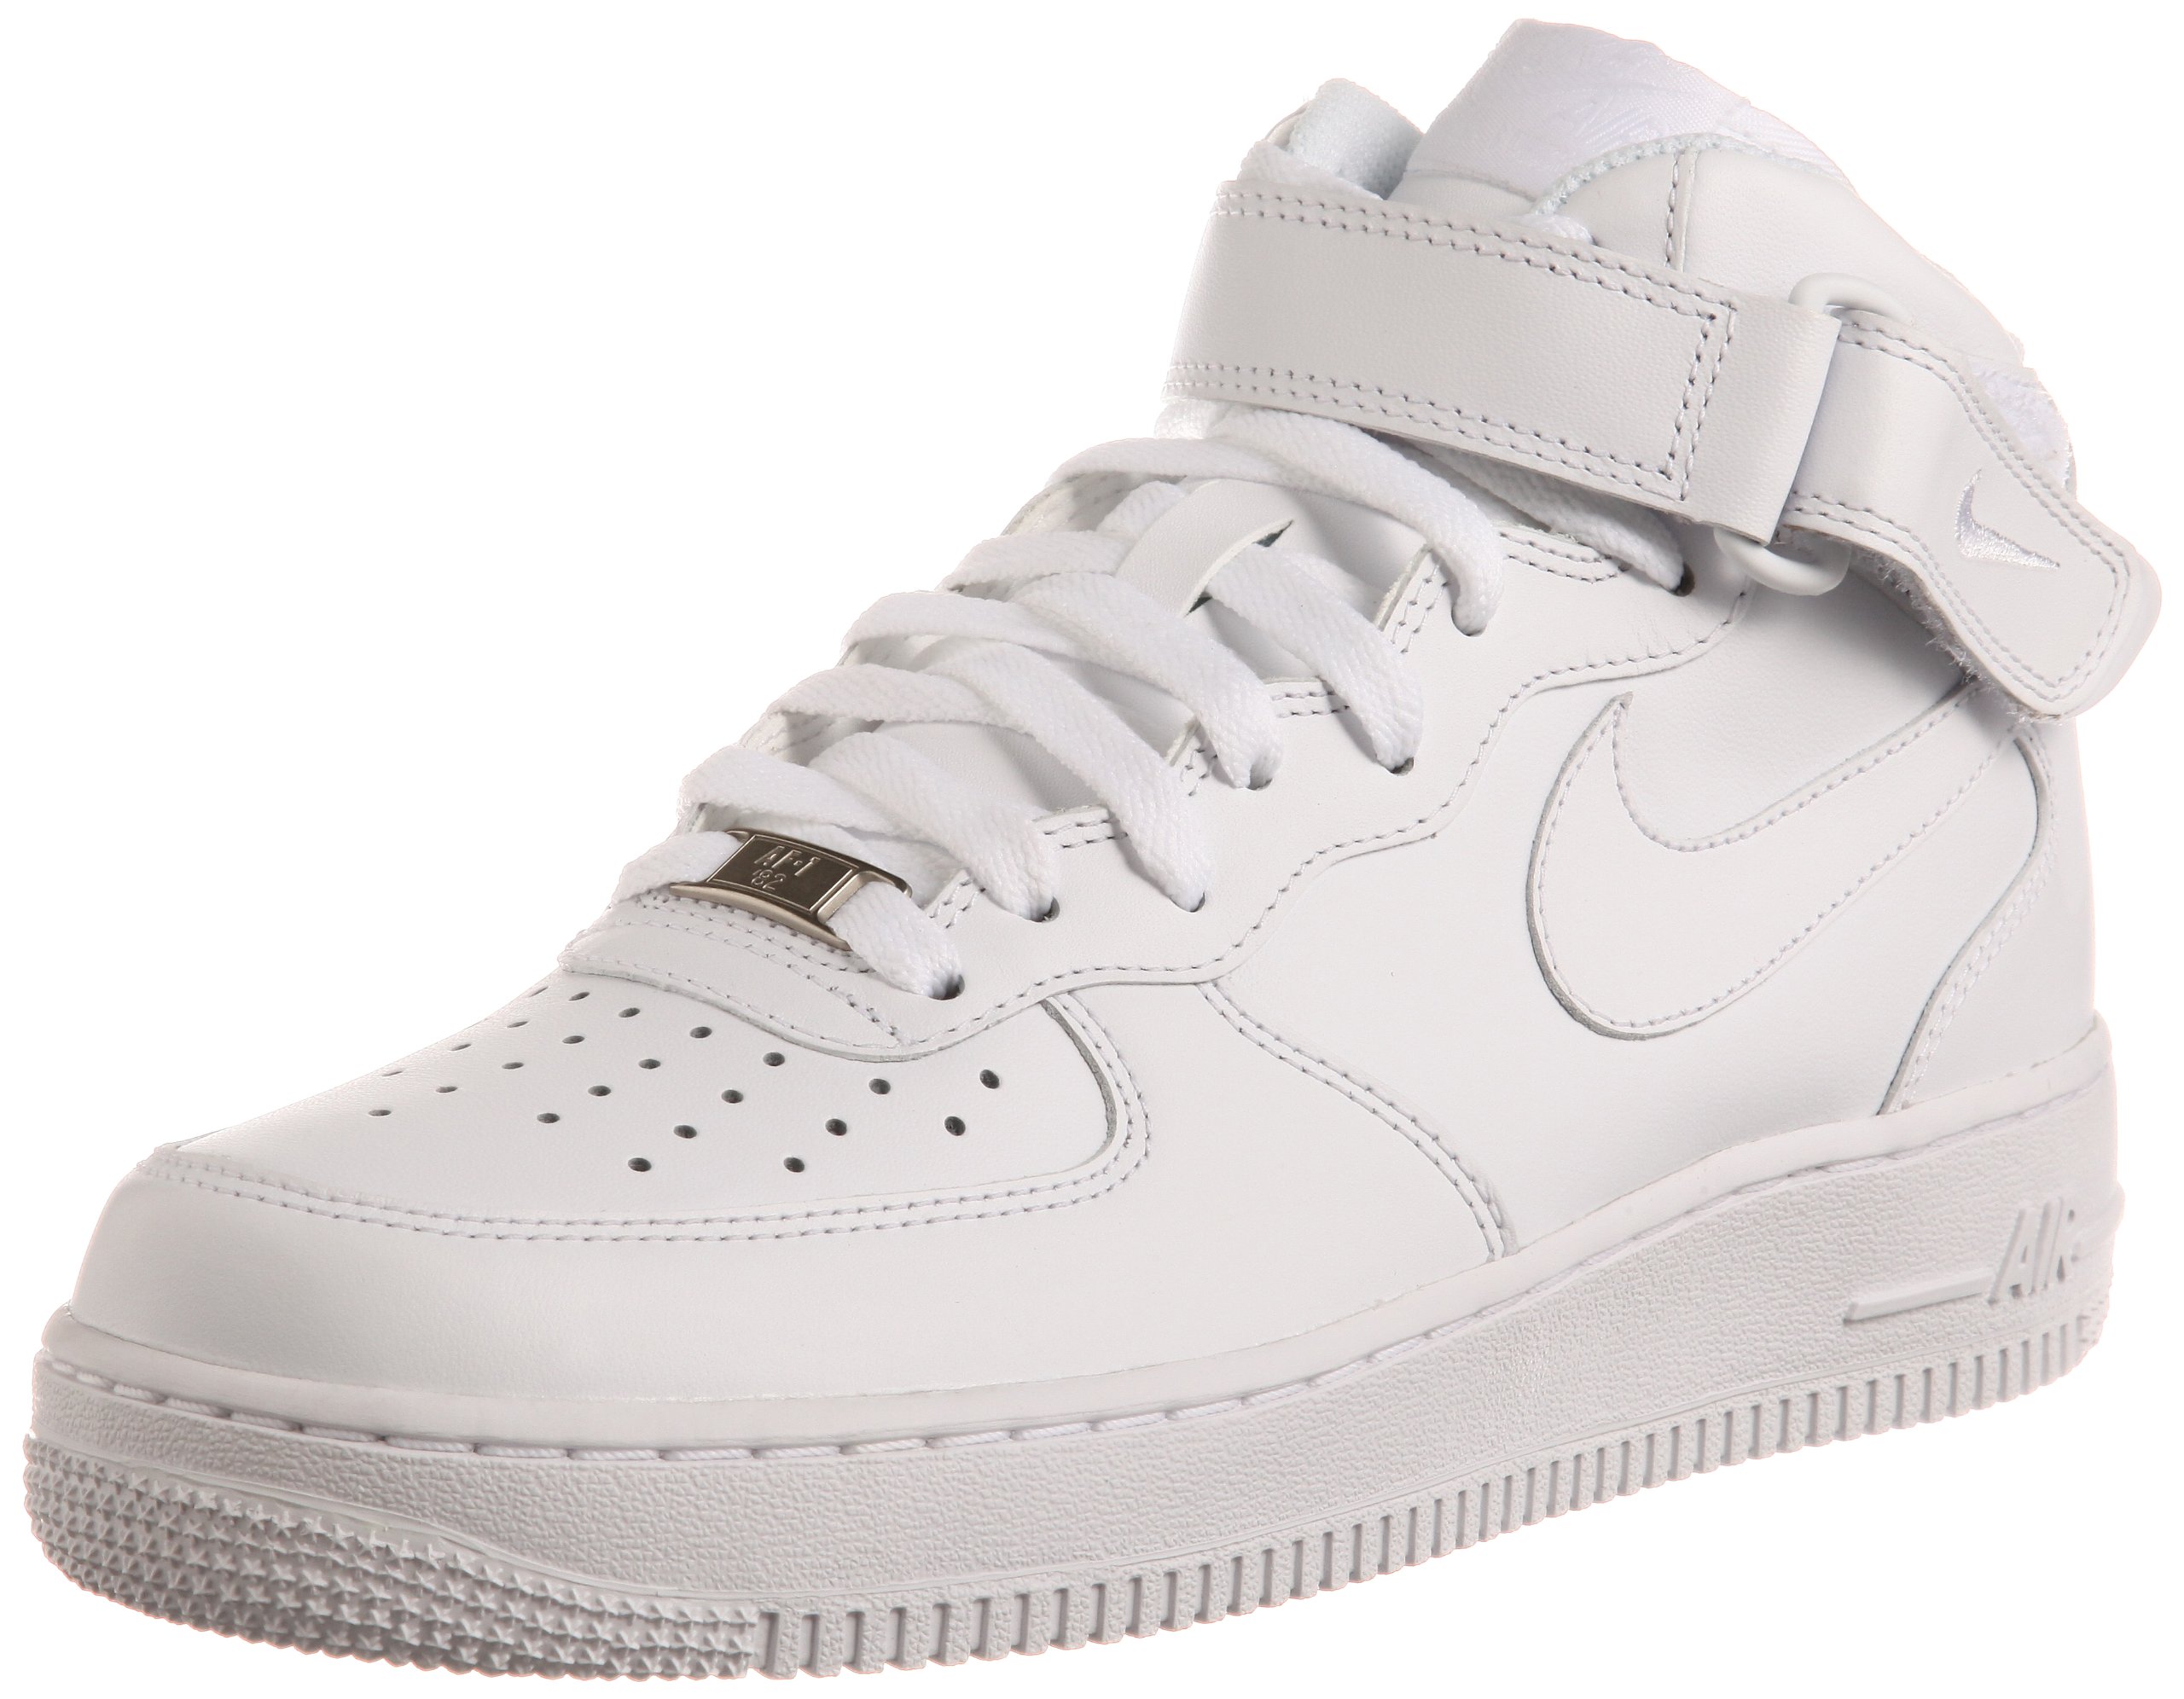 Nike 315123-111: Men's Air Force 1 Mid White/White Basketball Sneaker | eBay